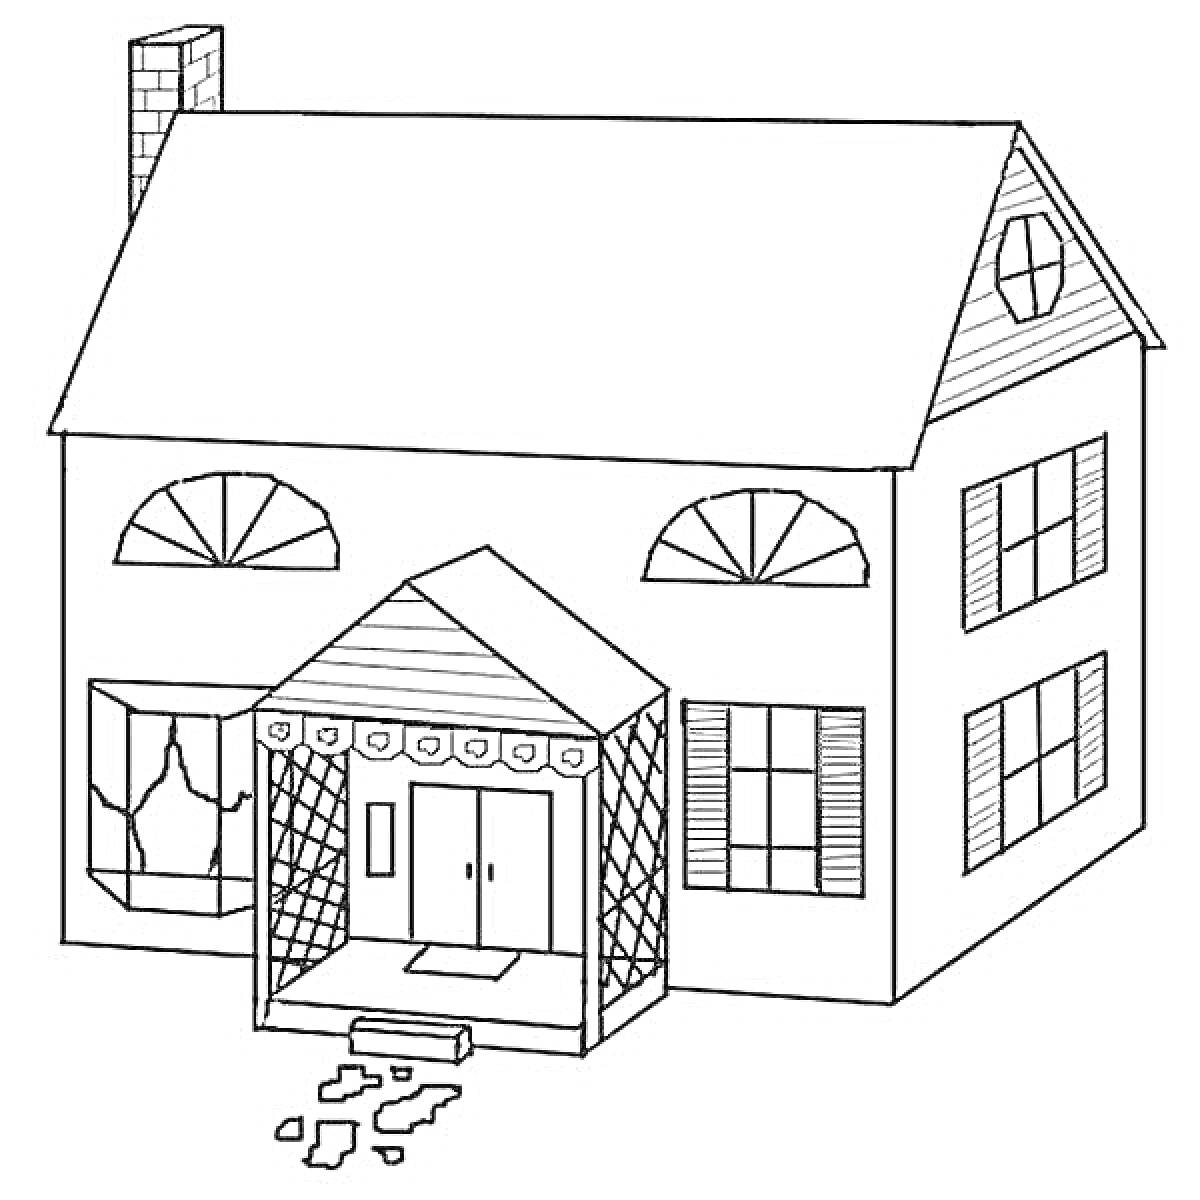 Двухэтажный дом с трубой, верандой, двумя окнами с арками, тремя окнами с ставнями, чердачным окном и дорожкой из камней